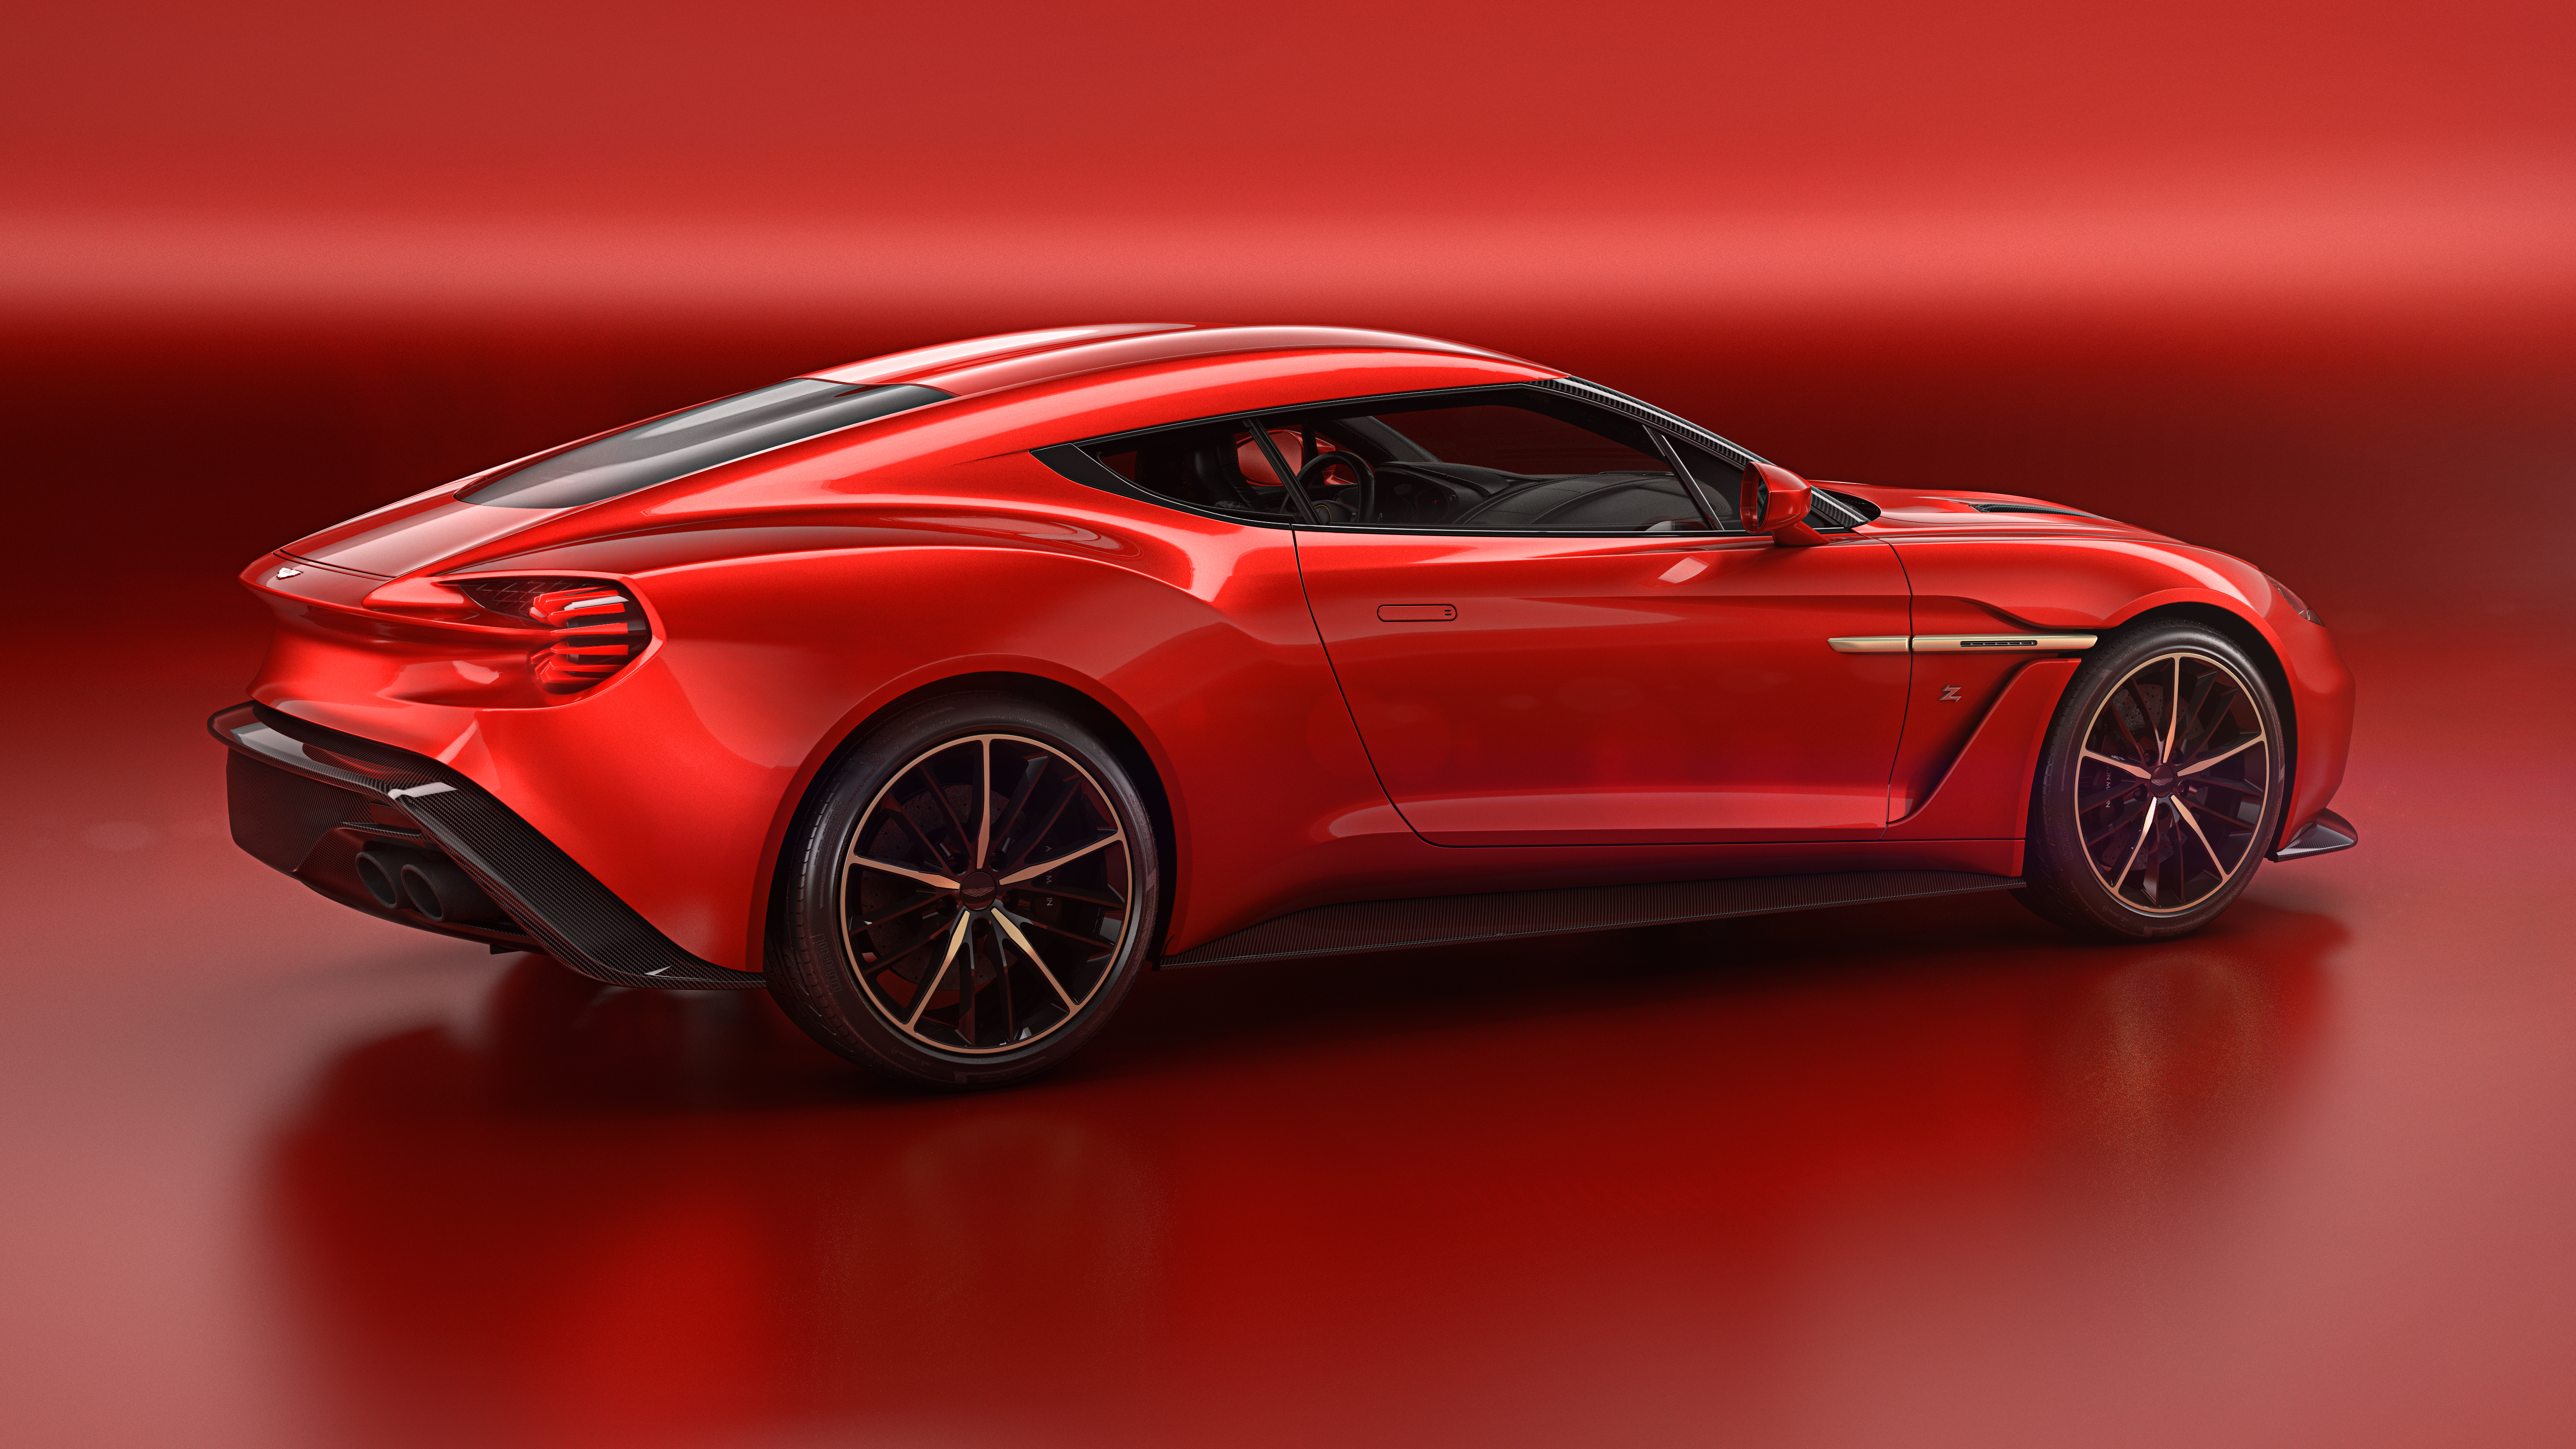 Télécharger des fonds d'écran Aston Martin Vanquish Zagato HD